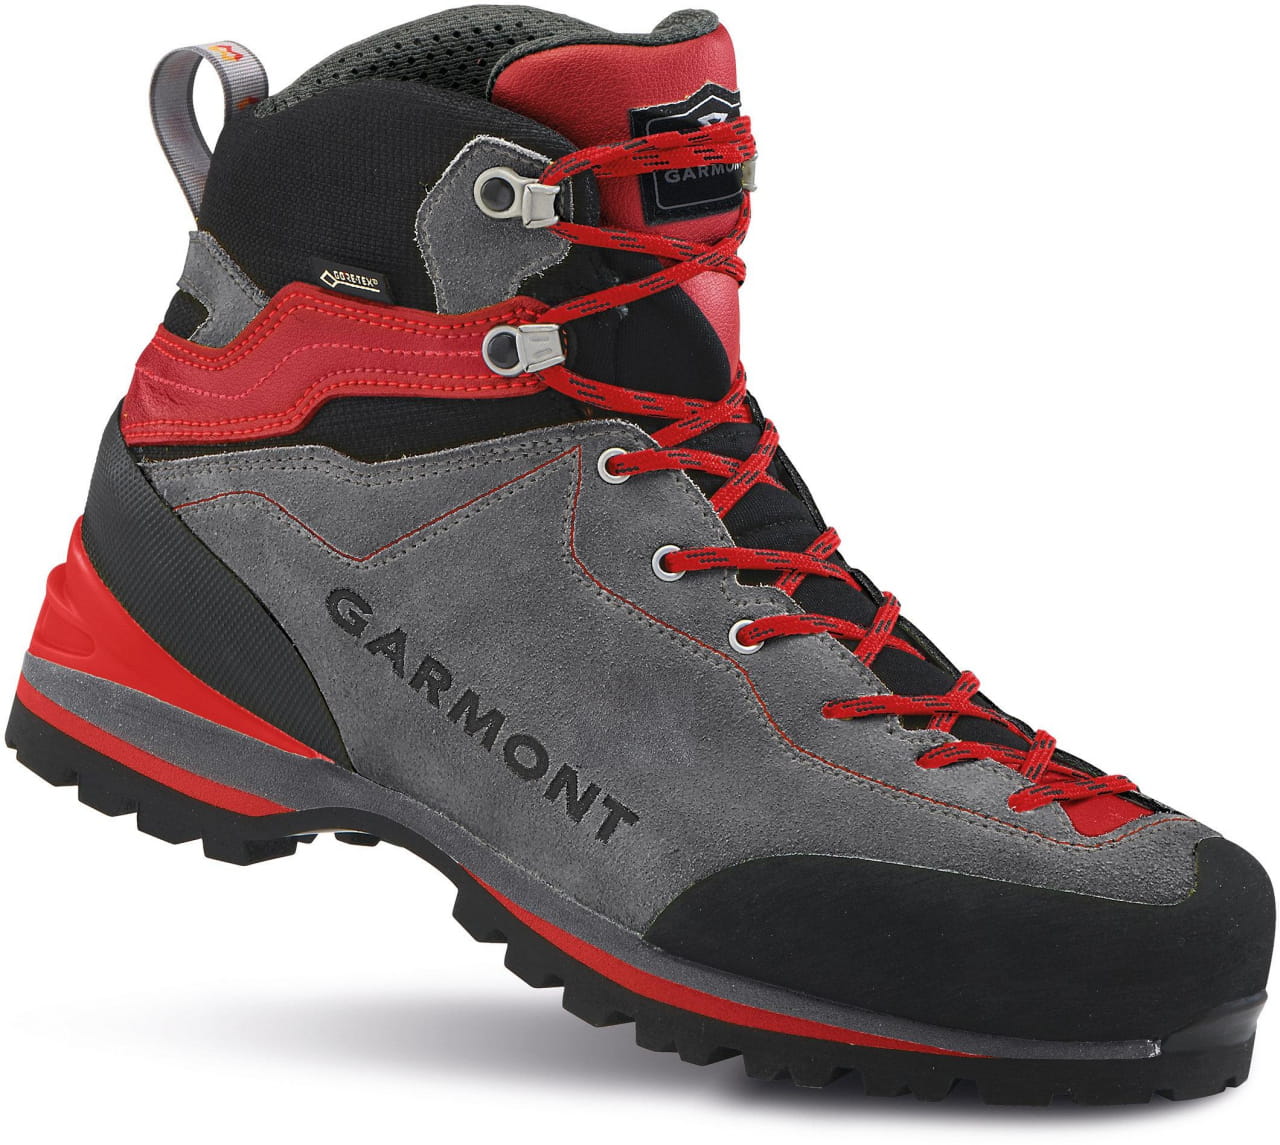 Outdoor-Schuhe für Männer Garmont Ascent Gtx